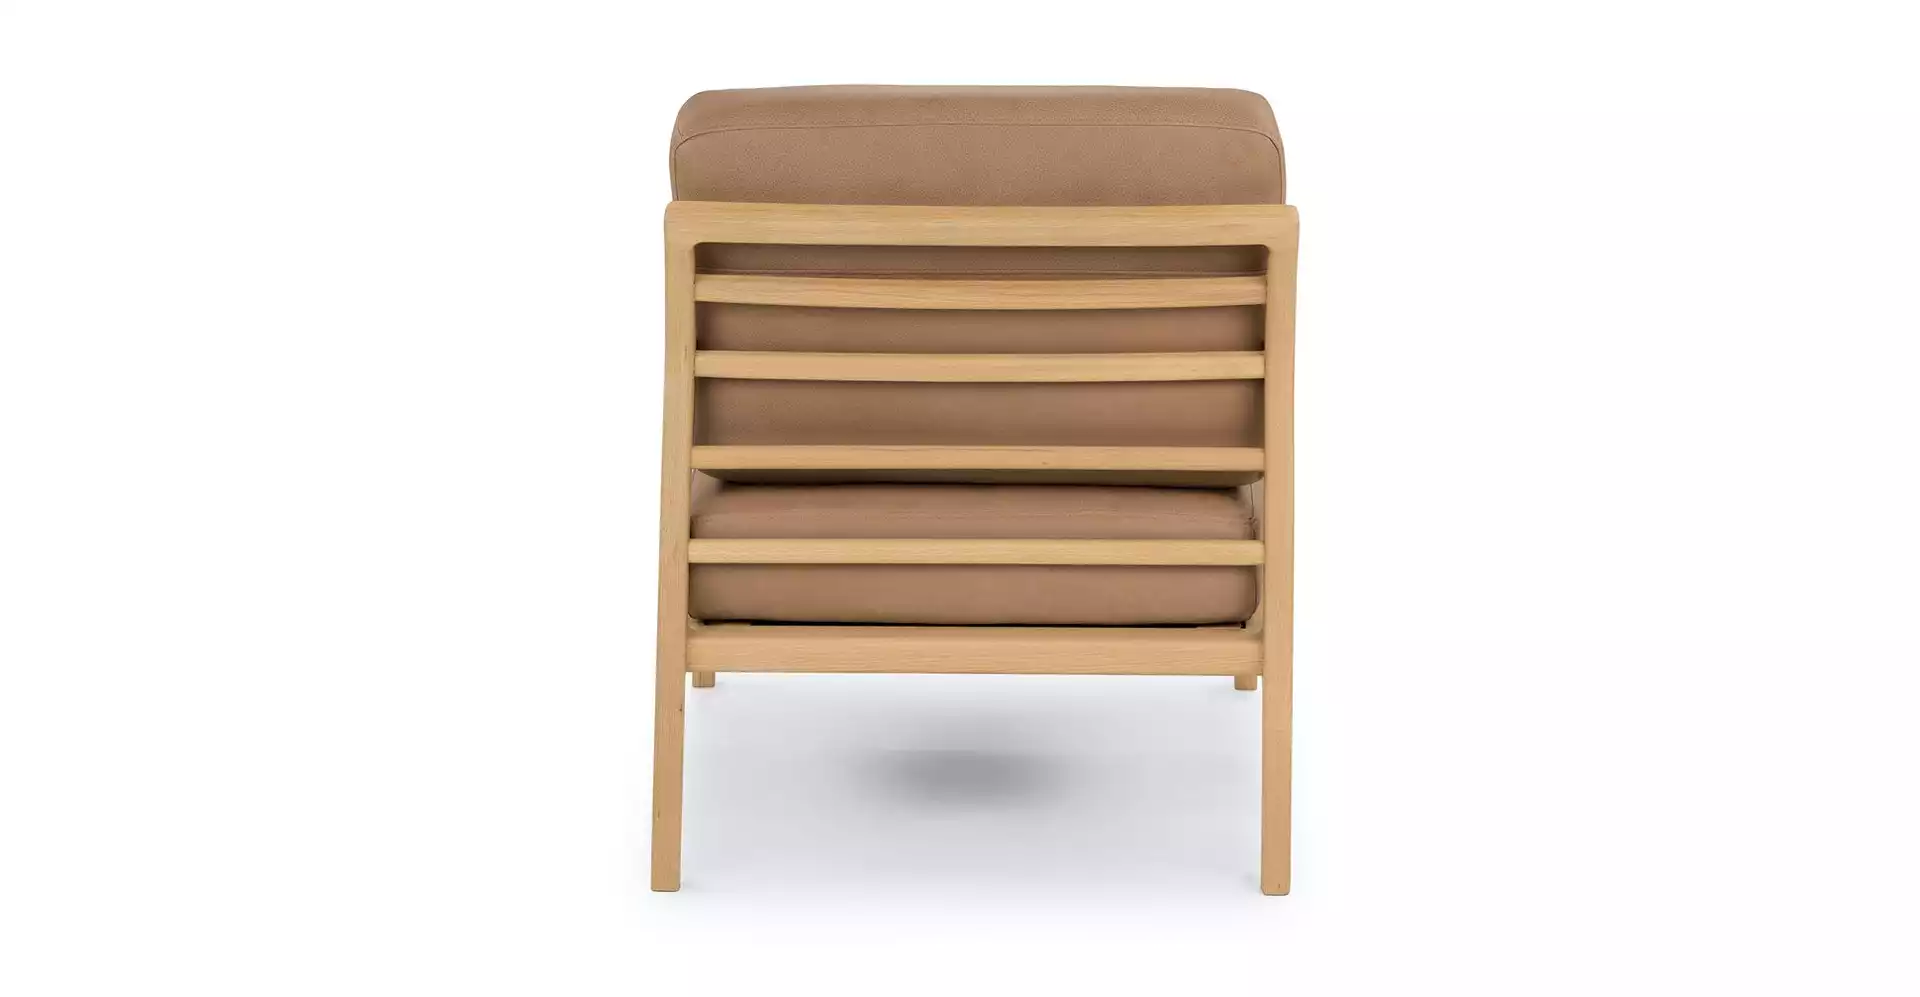 Denman Chair, Canyon Tan